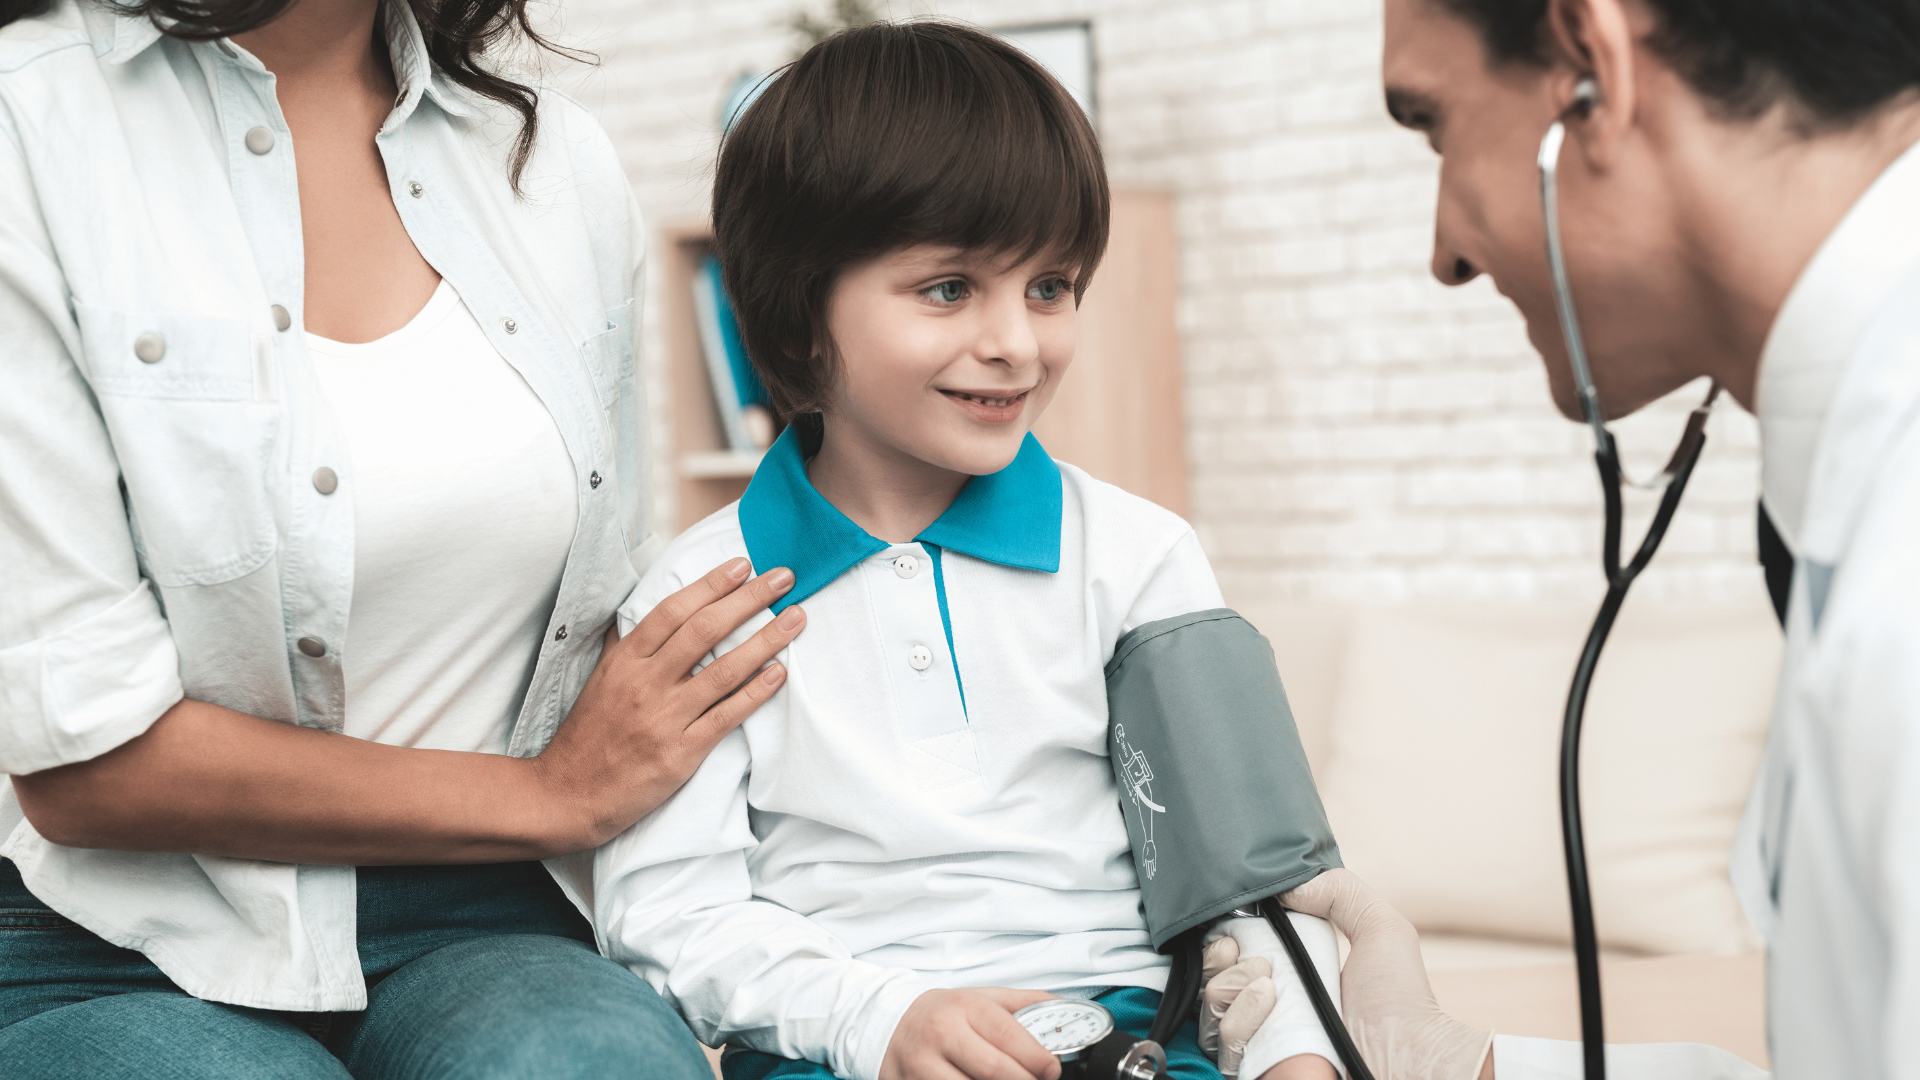 Hipertensão arterial na infância: especialistas alertam para importância da detecção precoce